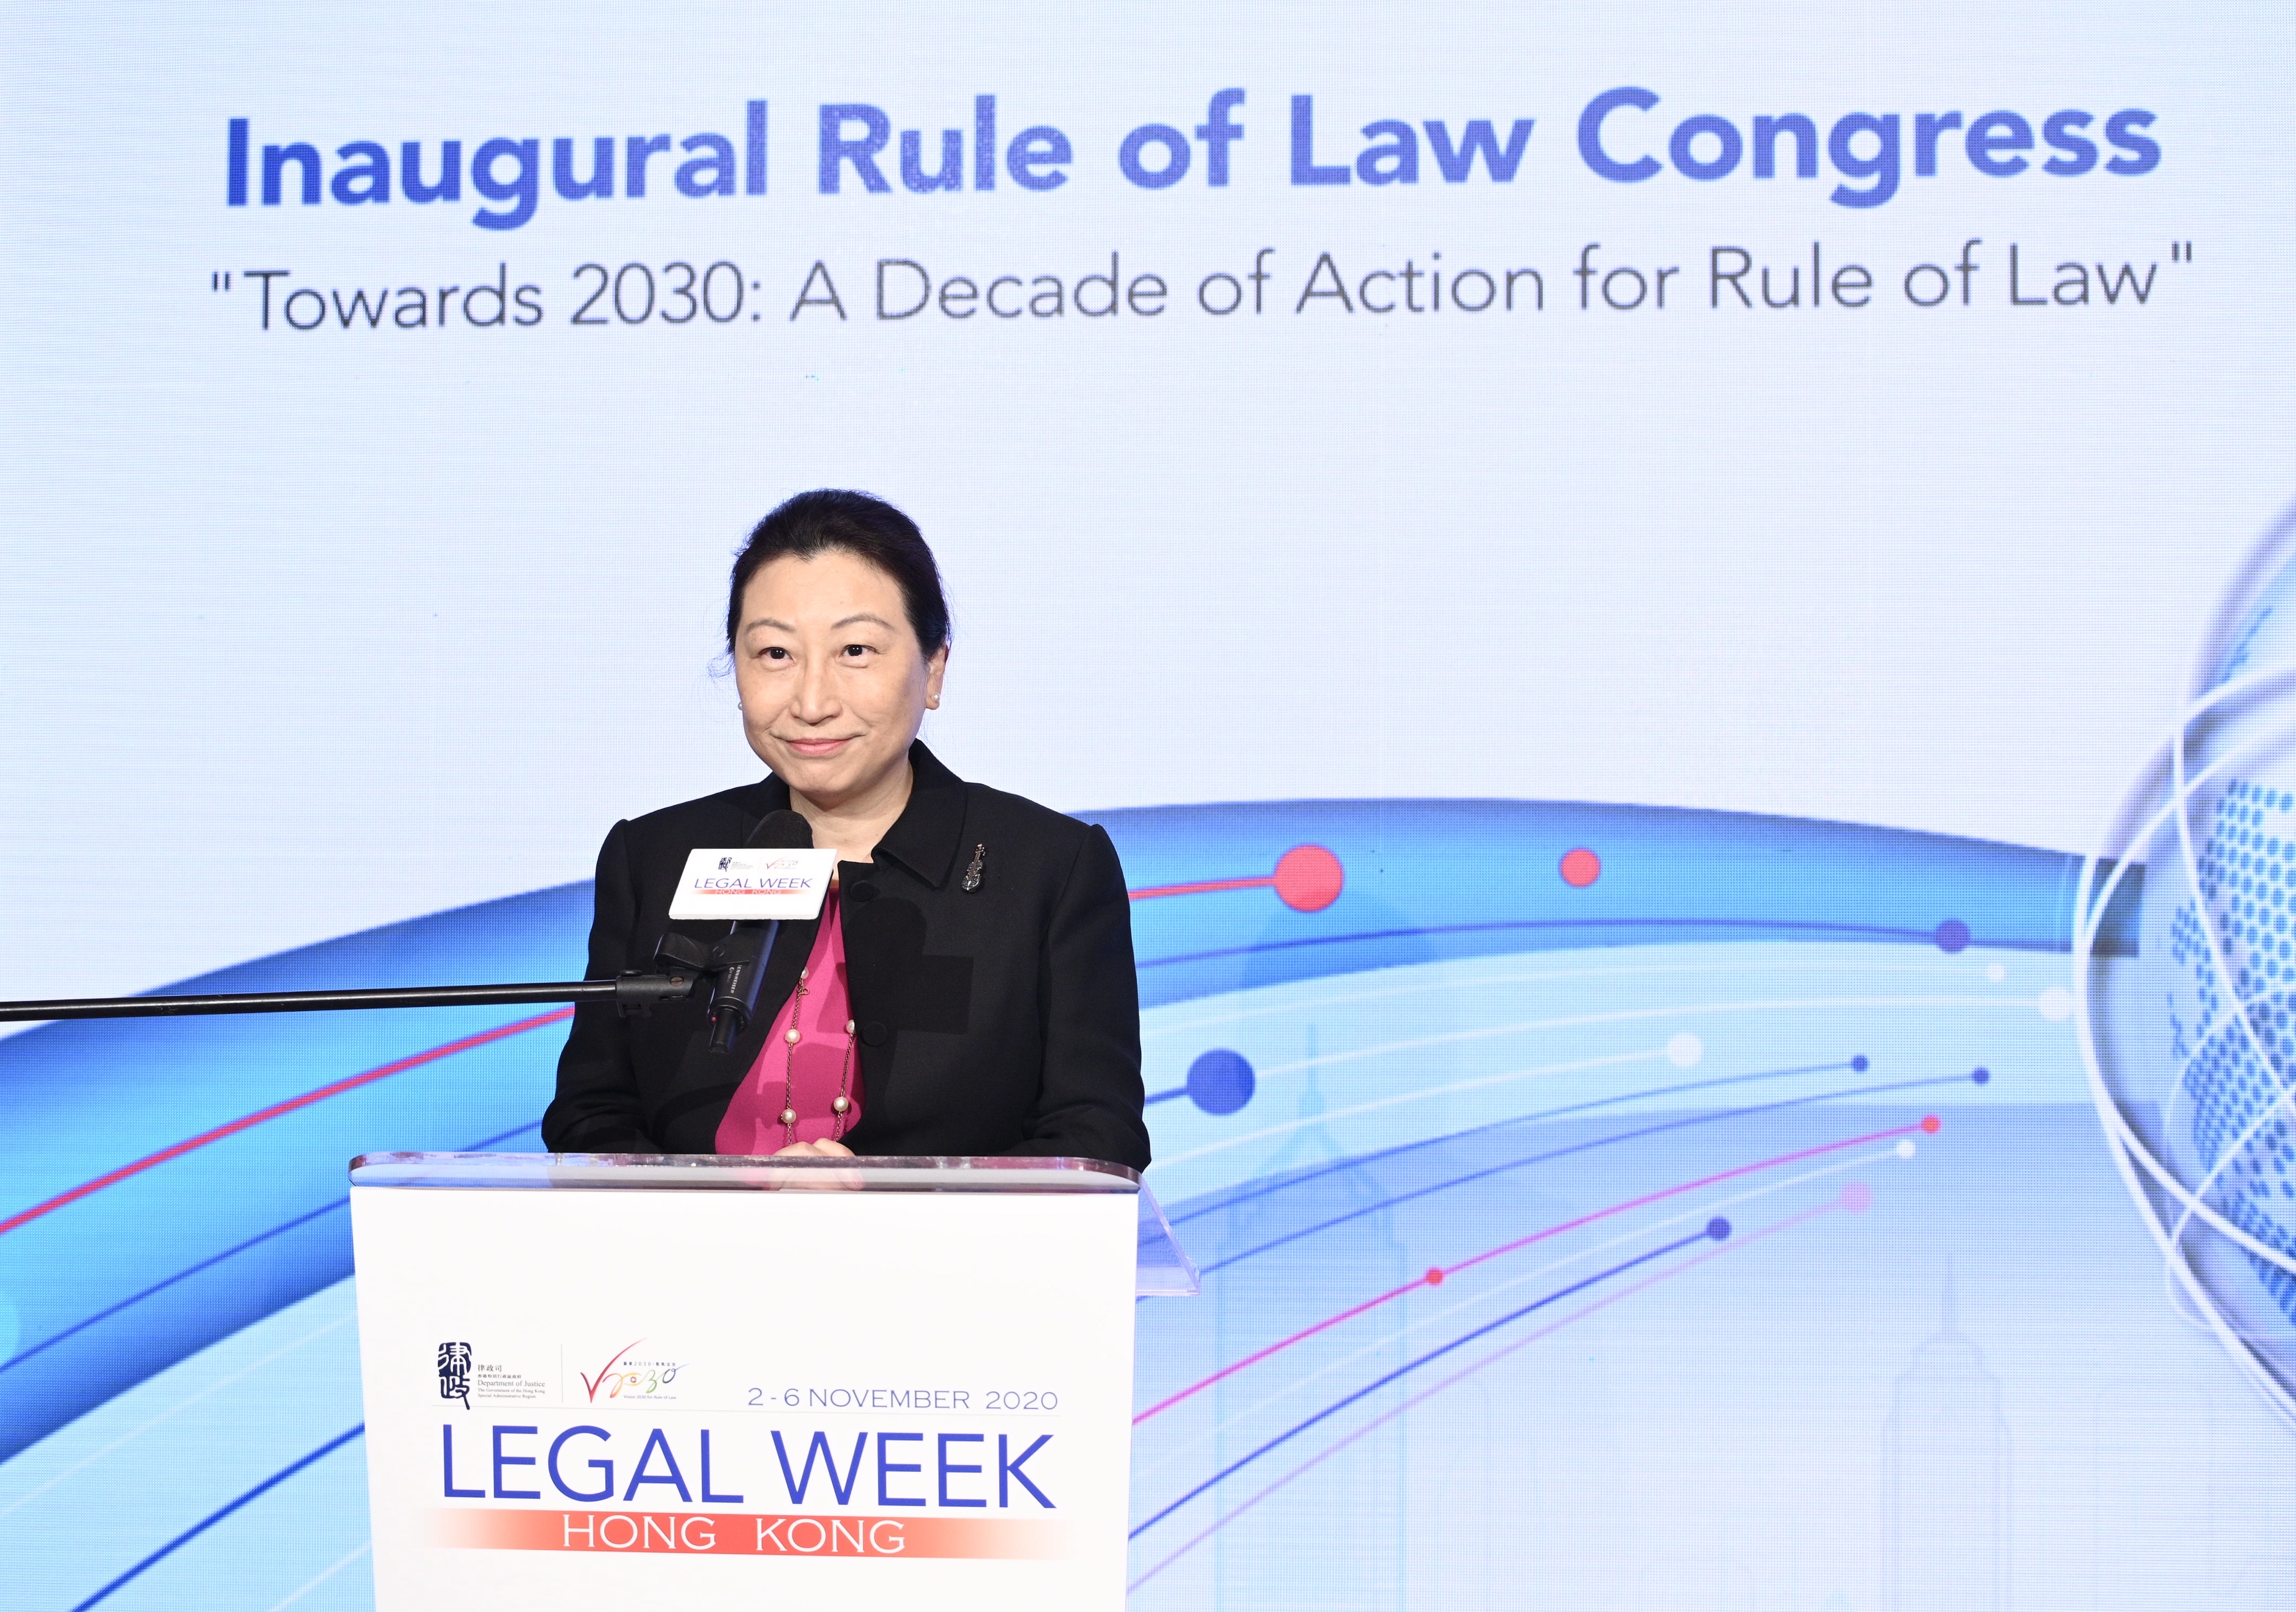 SJ speaks at Inaugural Rule of Law Congress under Hong Kong Legal Week 2020